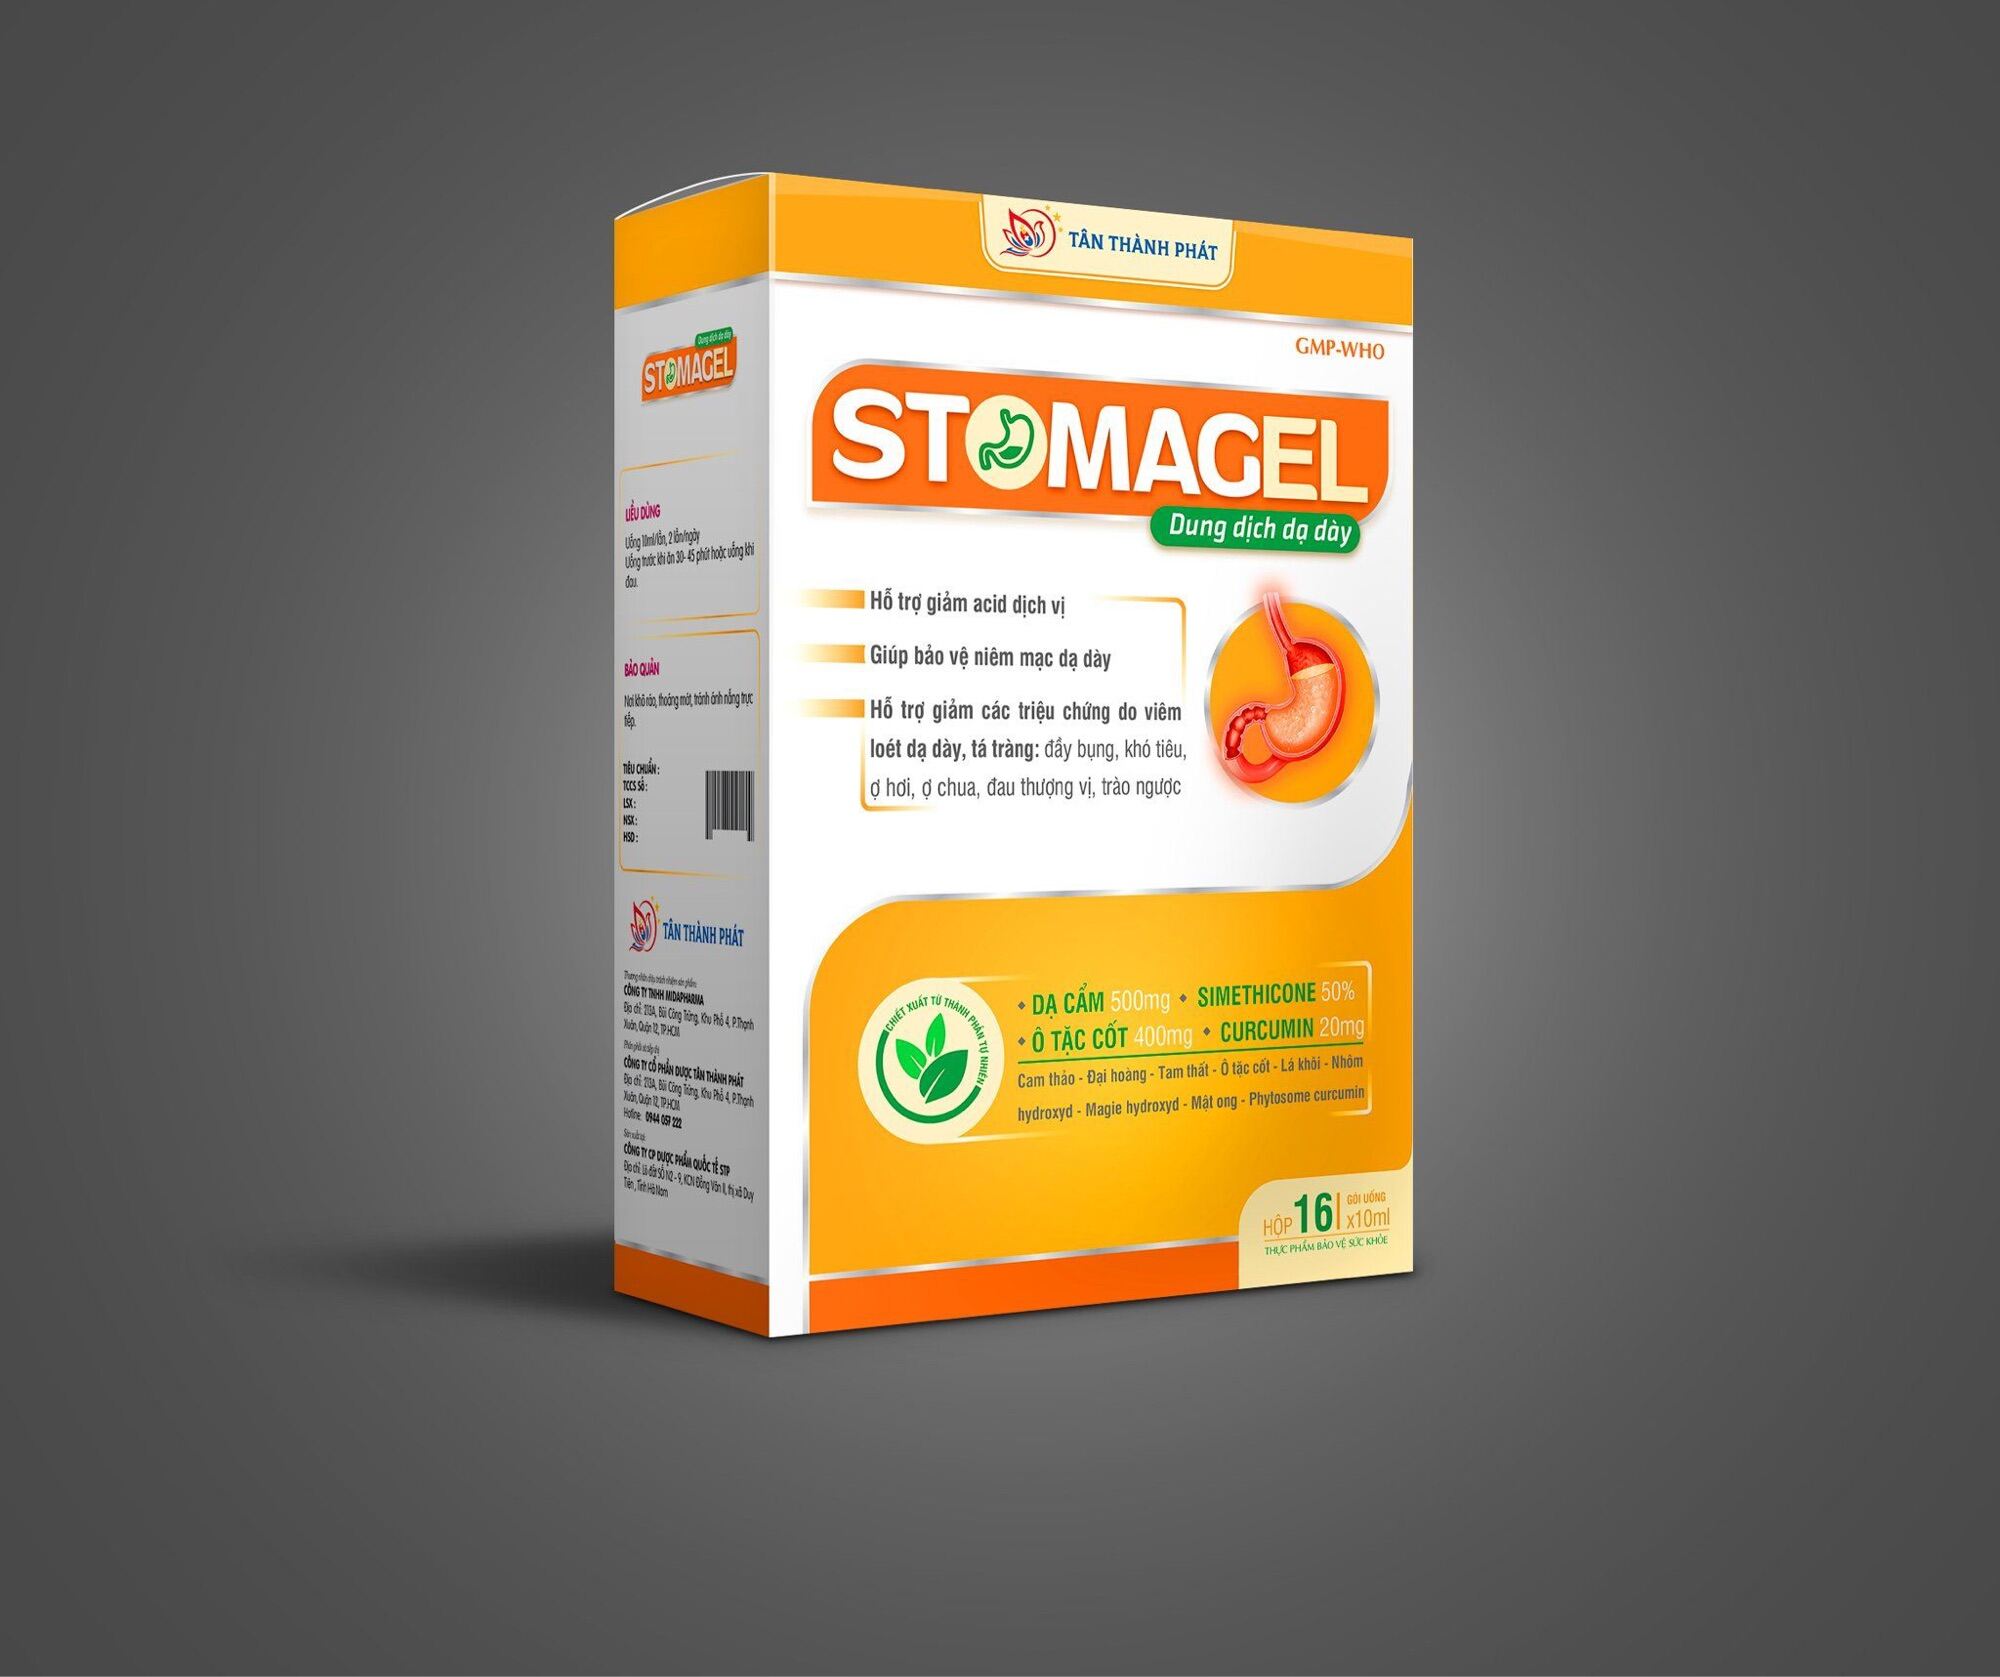 Dung dịch dạ dày STOMAGEL Hỗ trợ giảm acid dịch vị